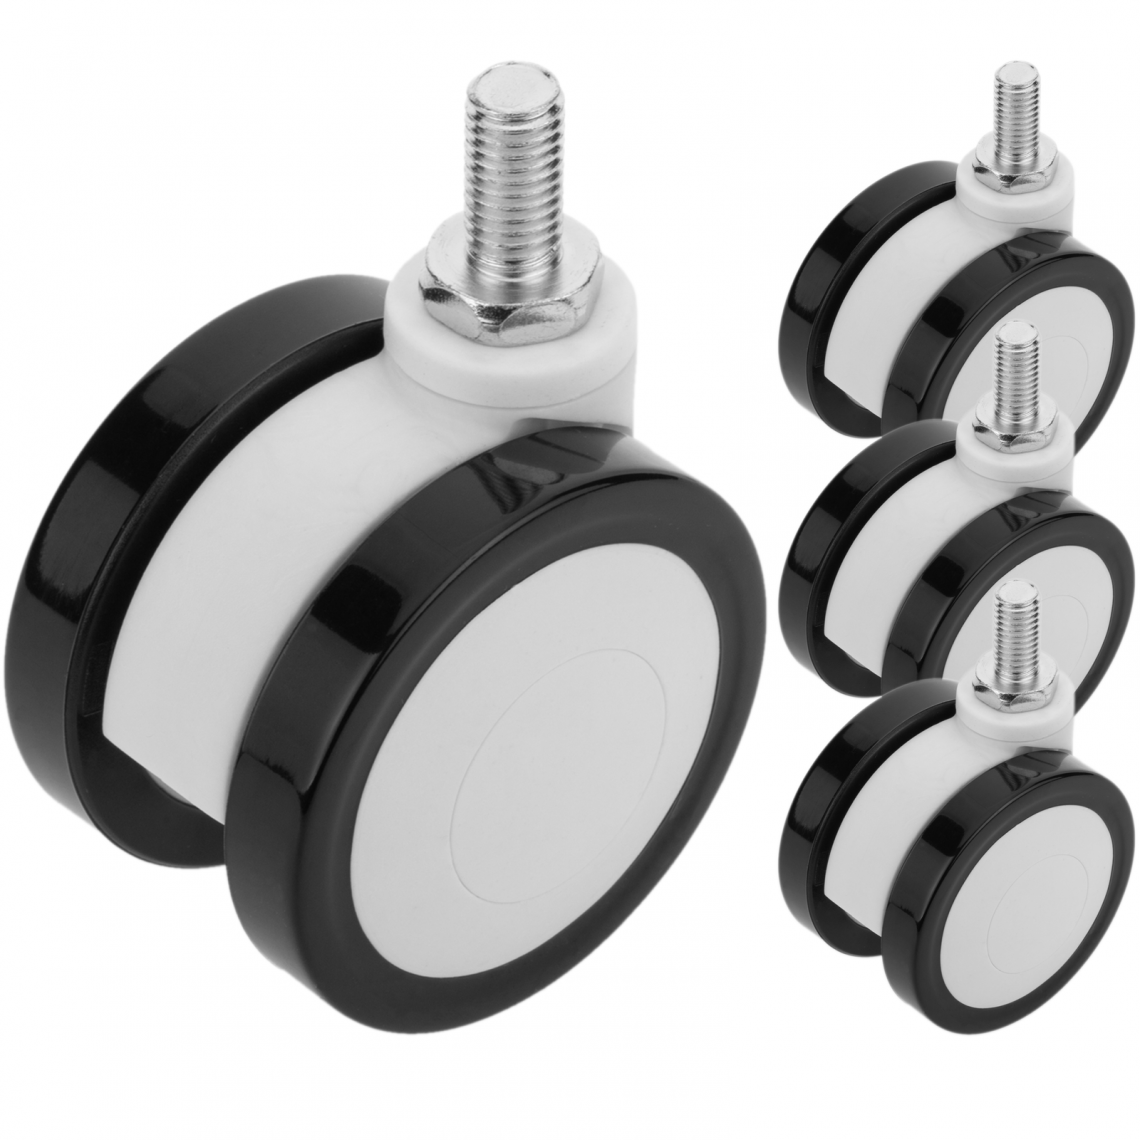 Primematik - Roulettes pivotantes pour lit médicalisé, fixation à filetage M12x20, 65x45x73mm 4-pack couleur noir et blanc - Pieds & roulettes pour meuble